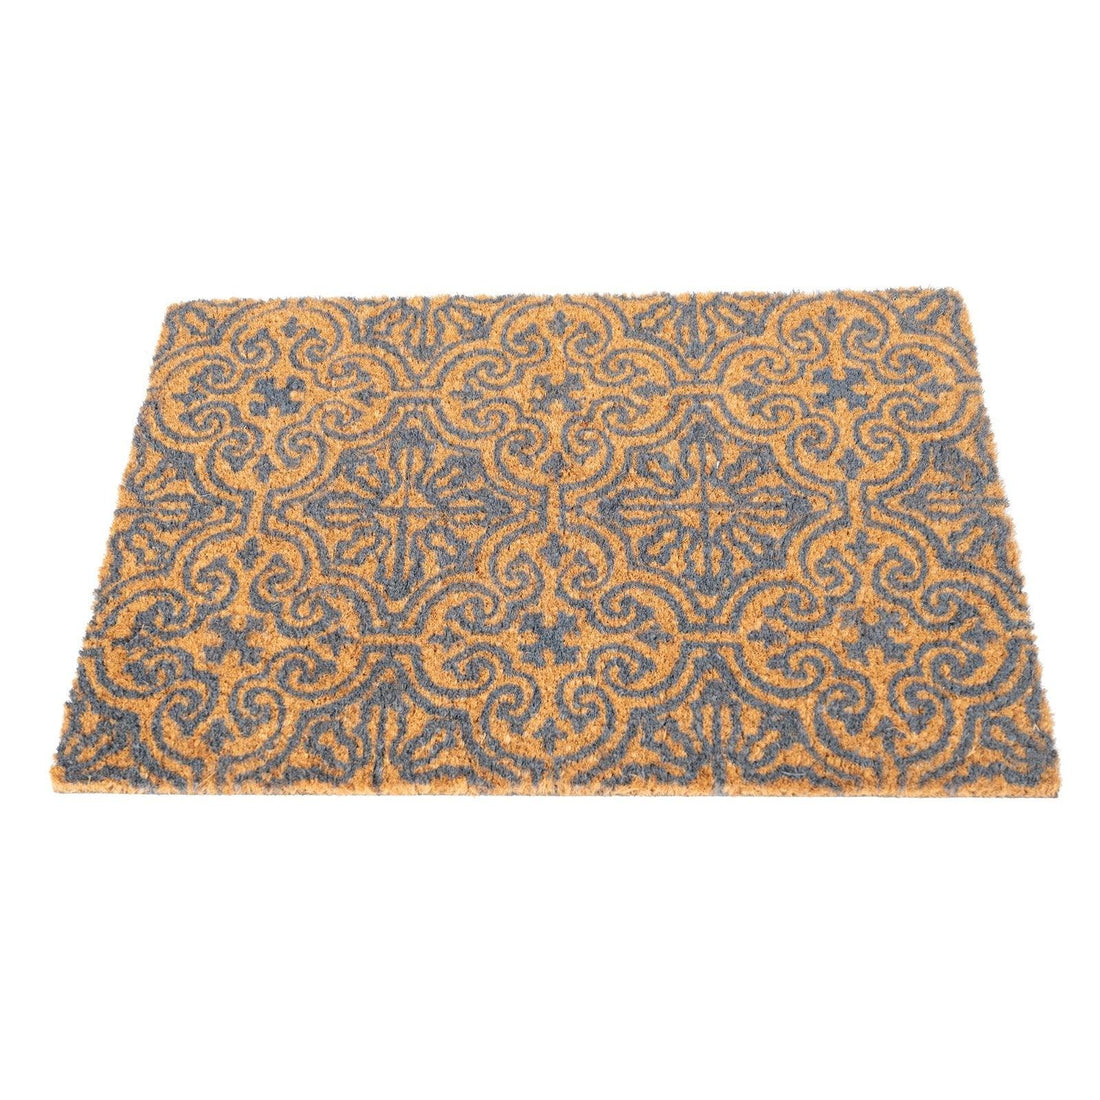 Coir Doormat Serenity Tile Design 40x60cm - £22.99 - Doormats 